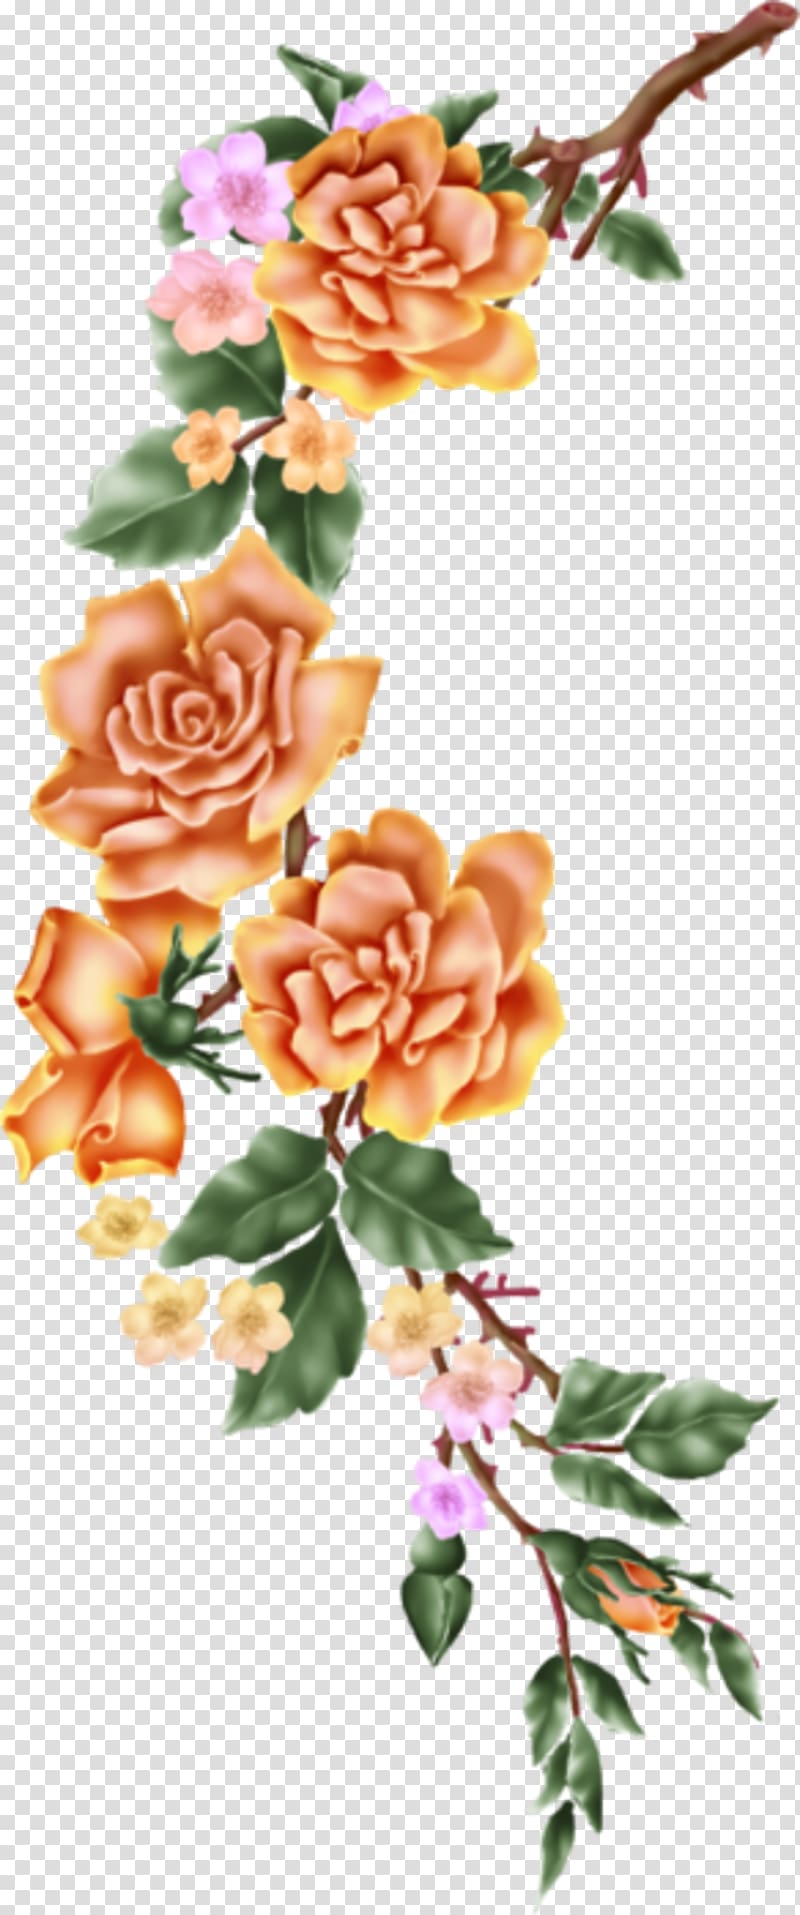 Flower Floral design Art , flower transparent background PNG clipart